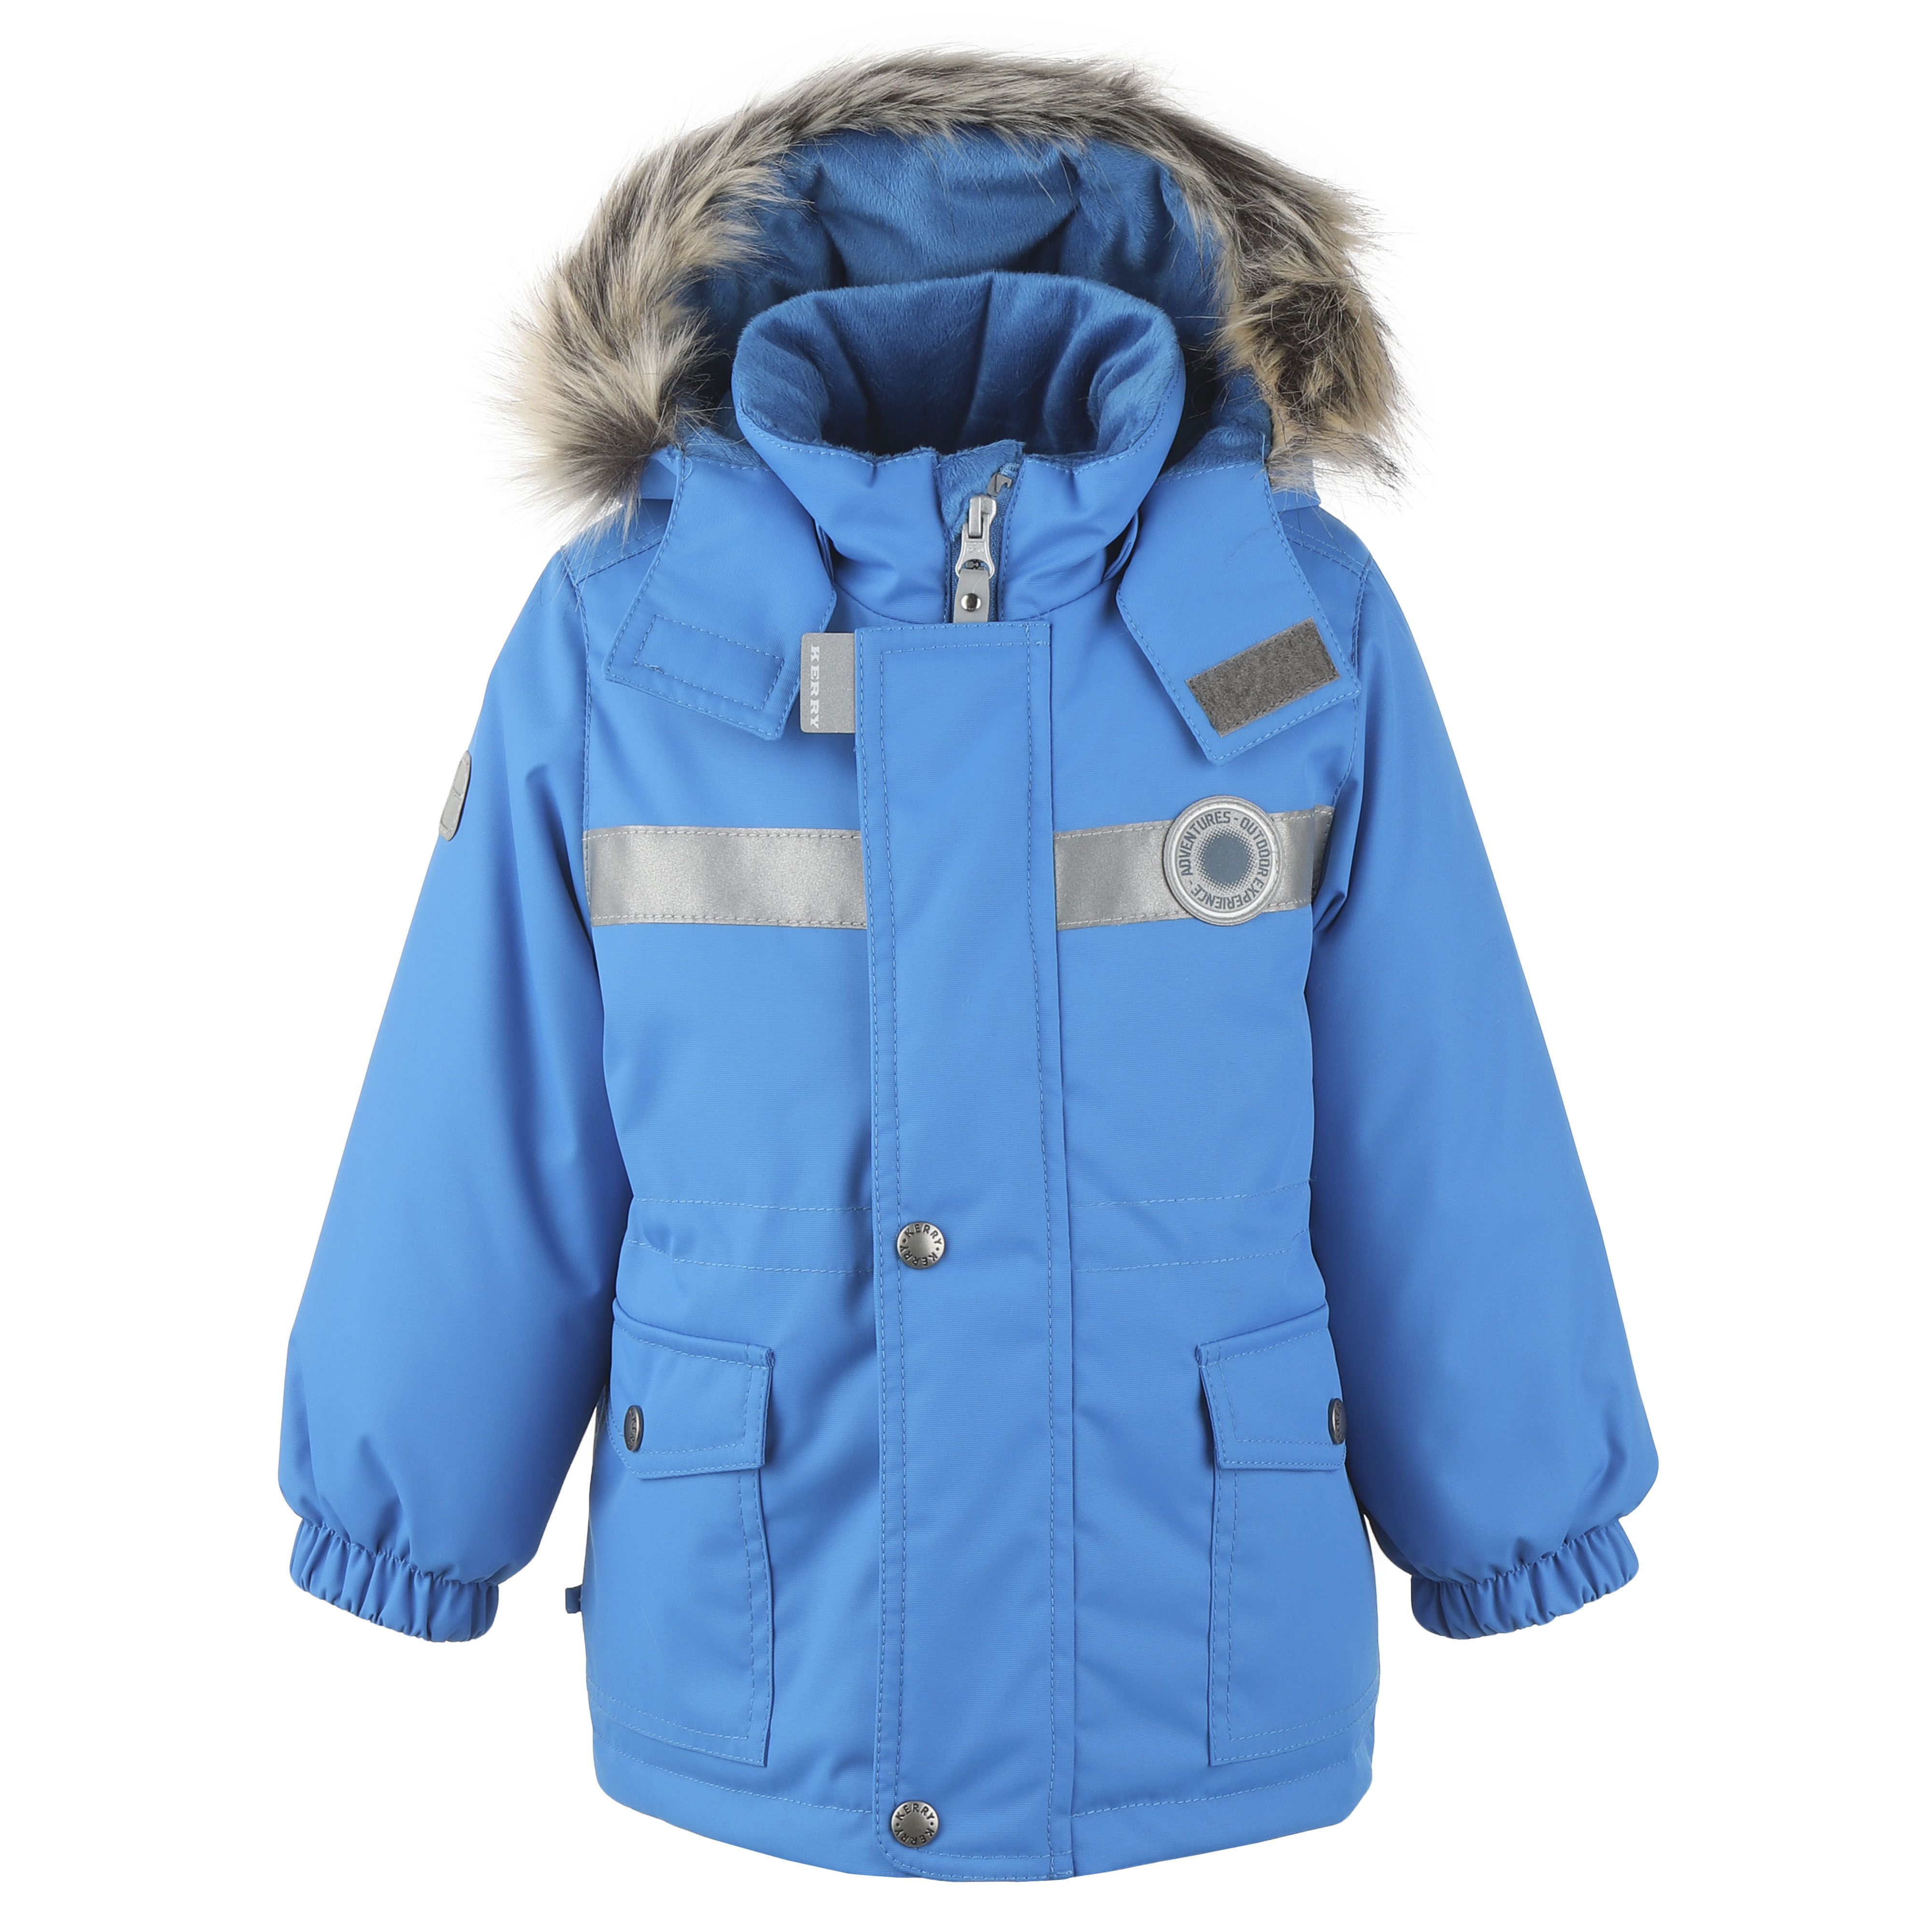 Куртка детская KERRY K20411_2021_NM цв. синий р. 80 серая шапка с отделкой стразами joli bebe детская